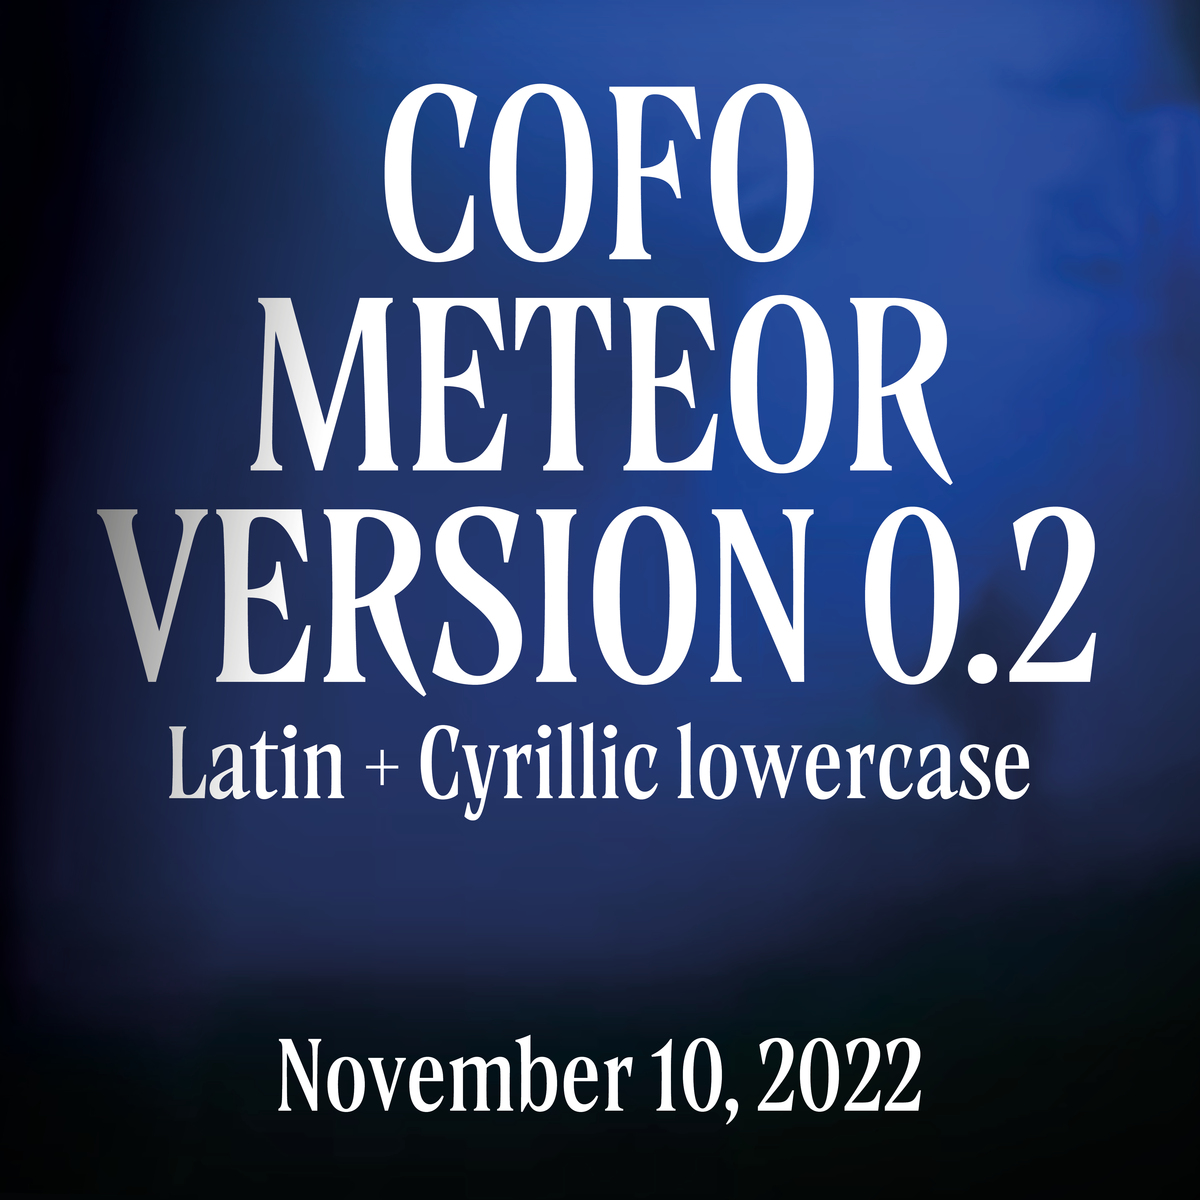 CoFo Meteor V0.2